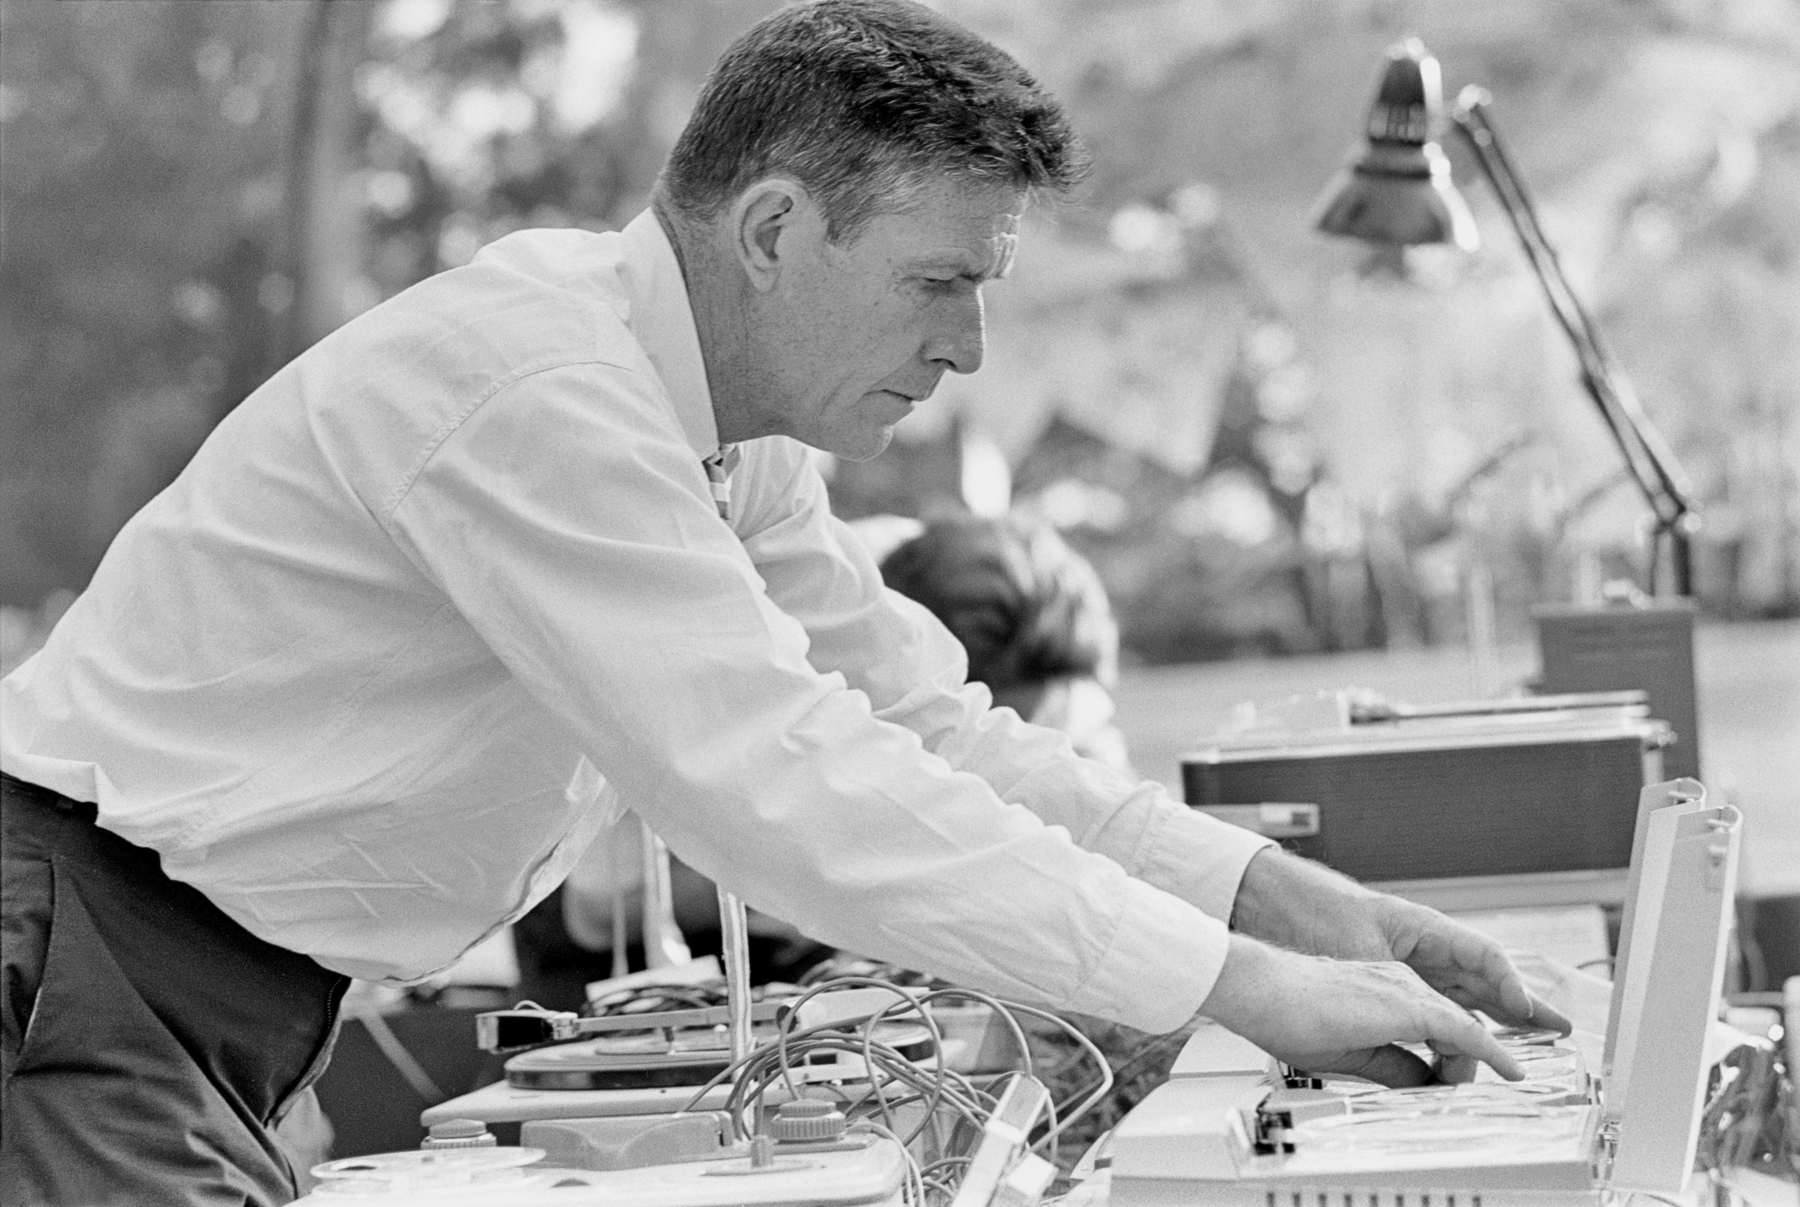 Fotografia em preto e branco. Homem de perfil, vestido com uma camisa branca, mexe em uma mesa de controle de som.